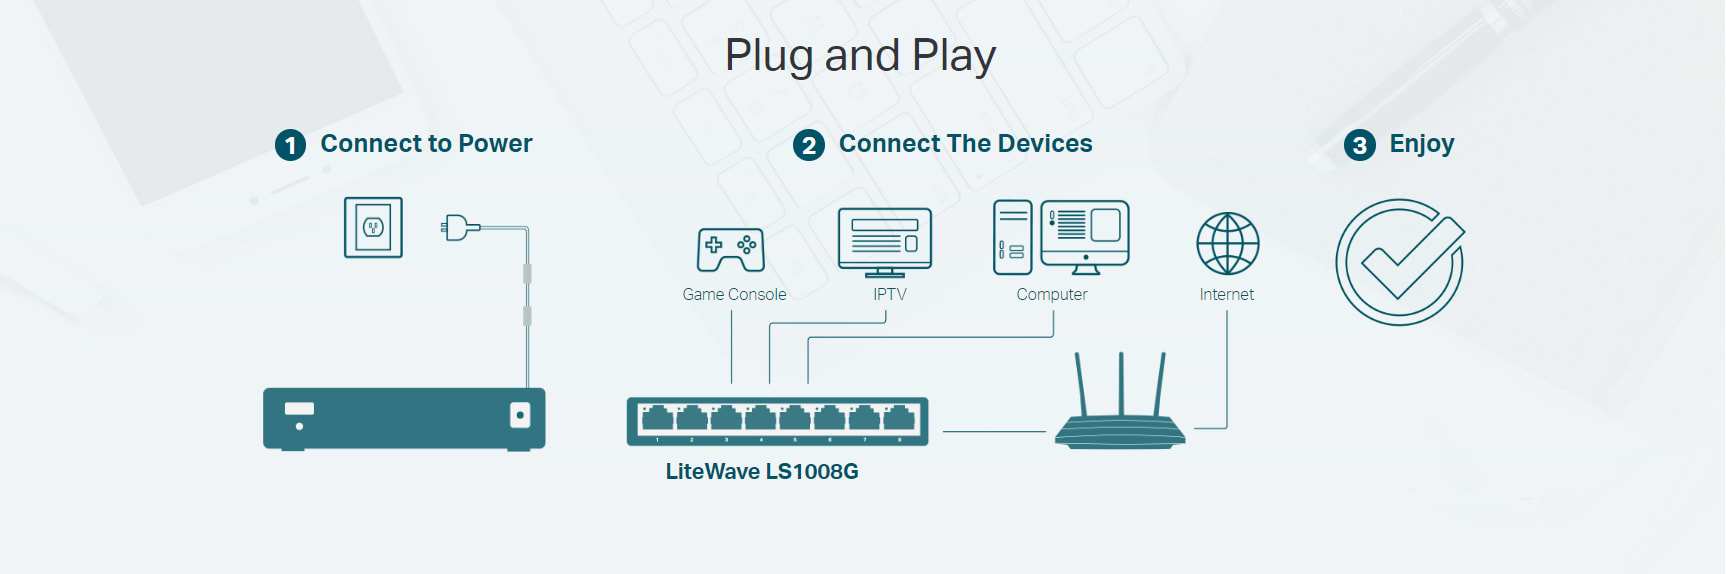 מתג שולחני 5 כניסות  TP-Link LS1005G Desktop Network Switch 10/100/1000Mbps - בצבע כחול שלוש שנות אחריות ע"י יבואן הרשמי 